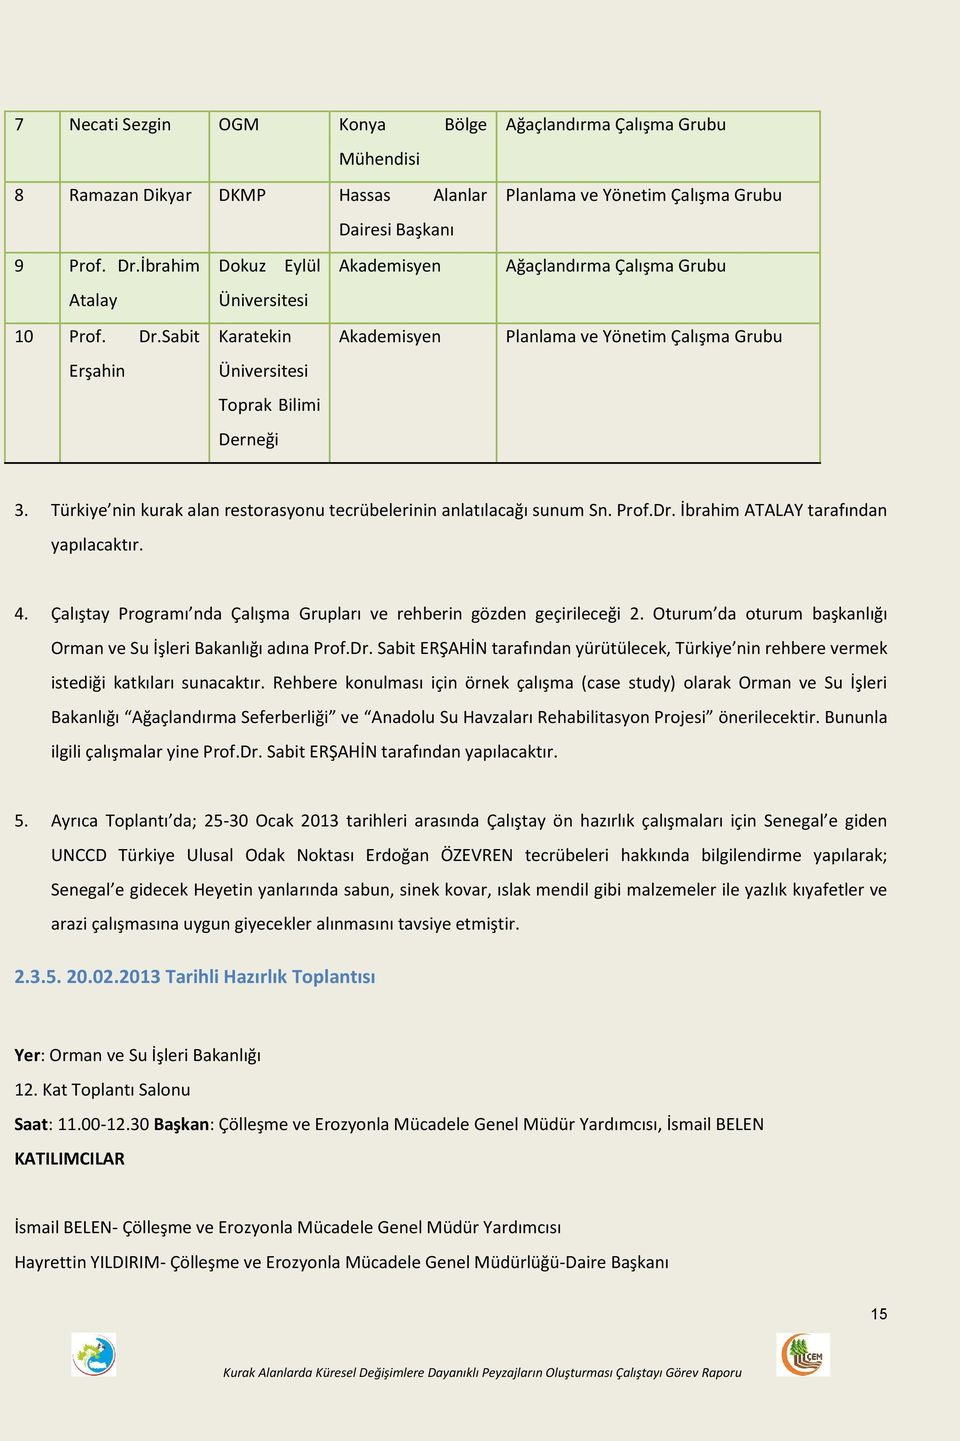 Sabit Karatekin Akademisyen Erşahin Üniversitesi Toprak Bilimi Derneği Ağaçlandırma Çalışma Grubu Planlama ve Yönetim Çalışma Grubu Ağaçlandırma Çalışma Grubu Planlama ve Yönetim Çalışma Grubu 3.